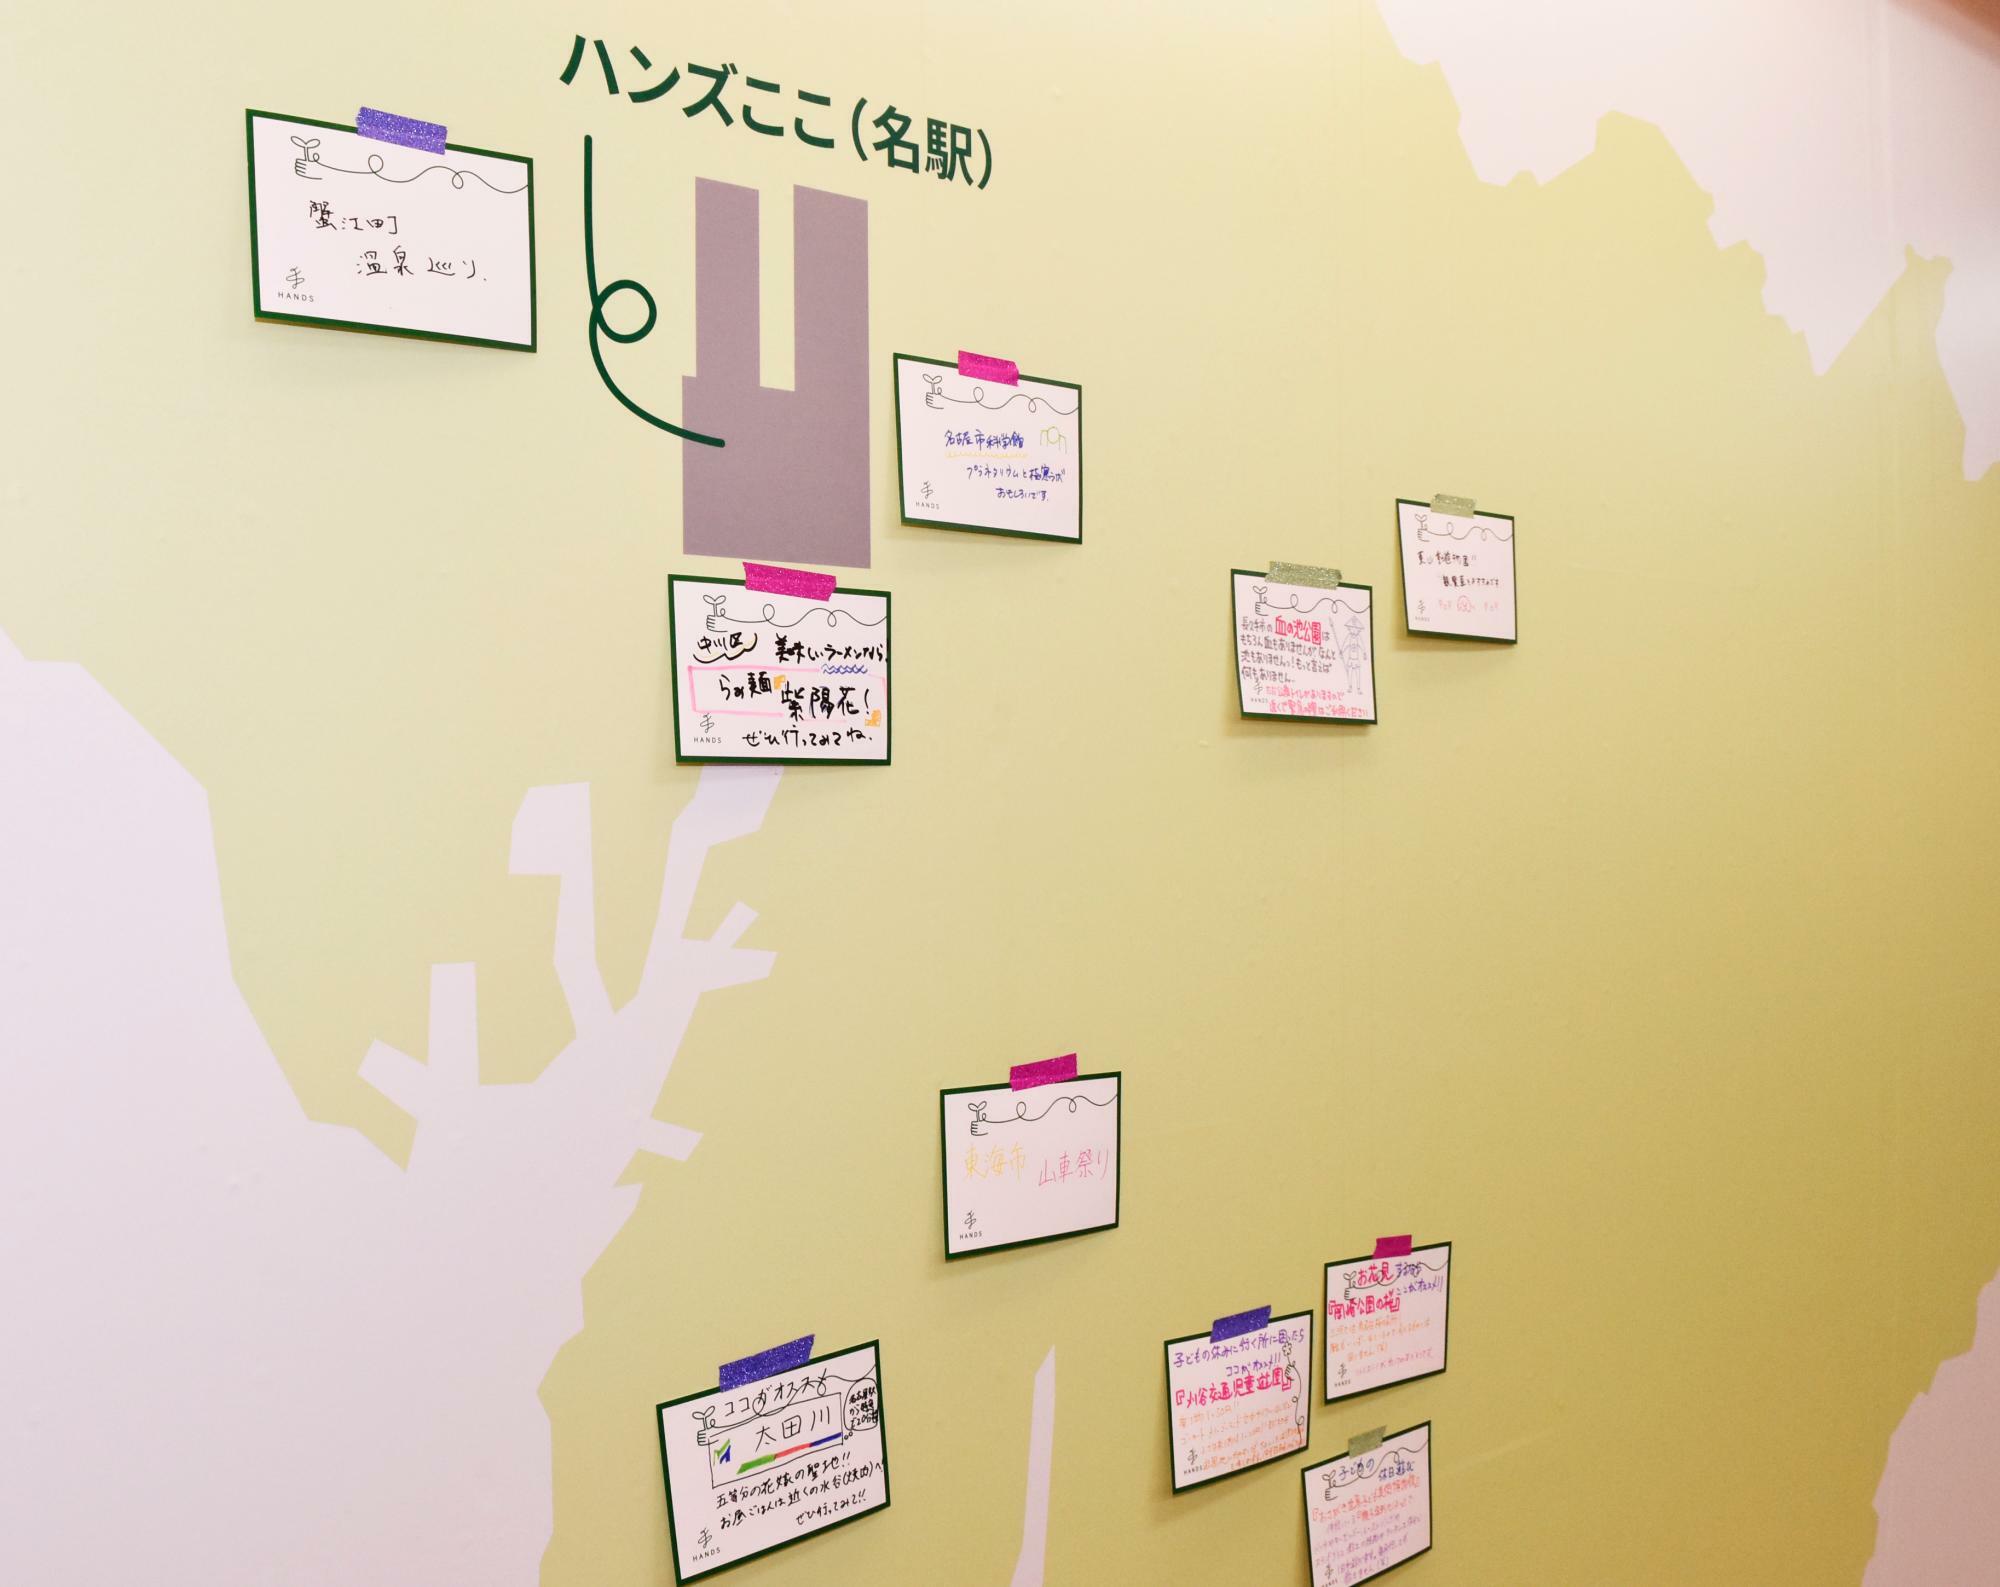 壁の愛知県地図に、お客が自身のお勧め情報をカードに書き込んで貼りつけていくコーナー。今後は「あなたの町のお勧めモーニング」などテーマを決めてコメントを寄せてもらうなどして、活用していく計画